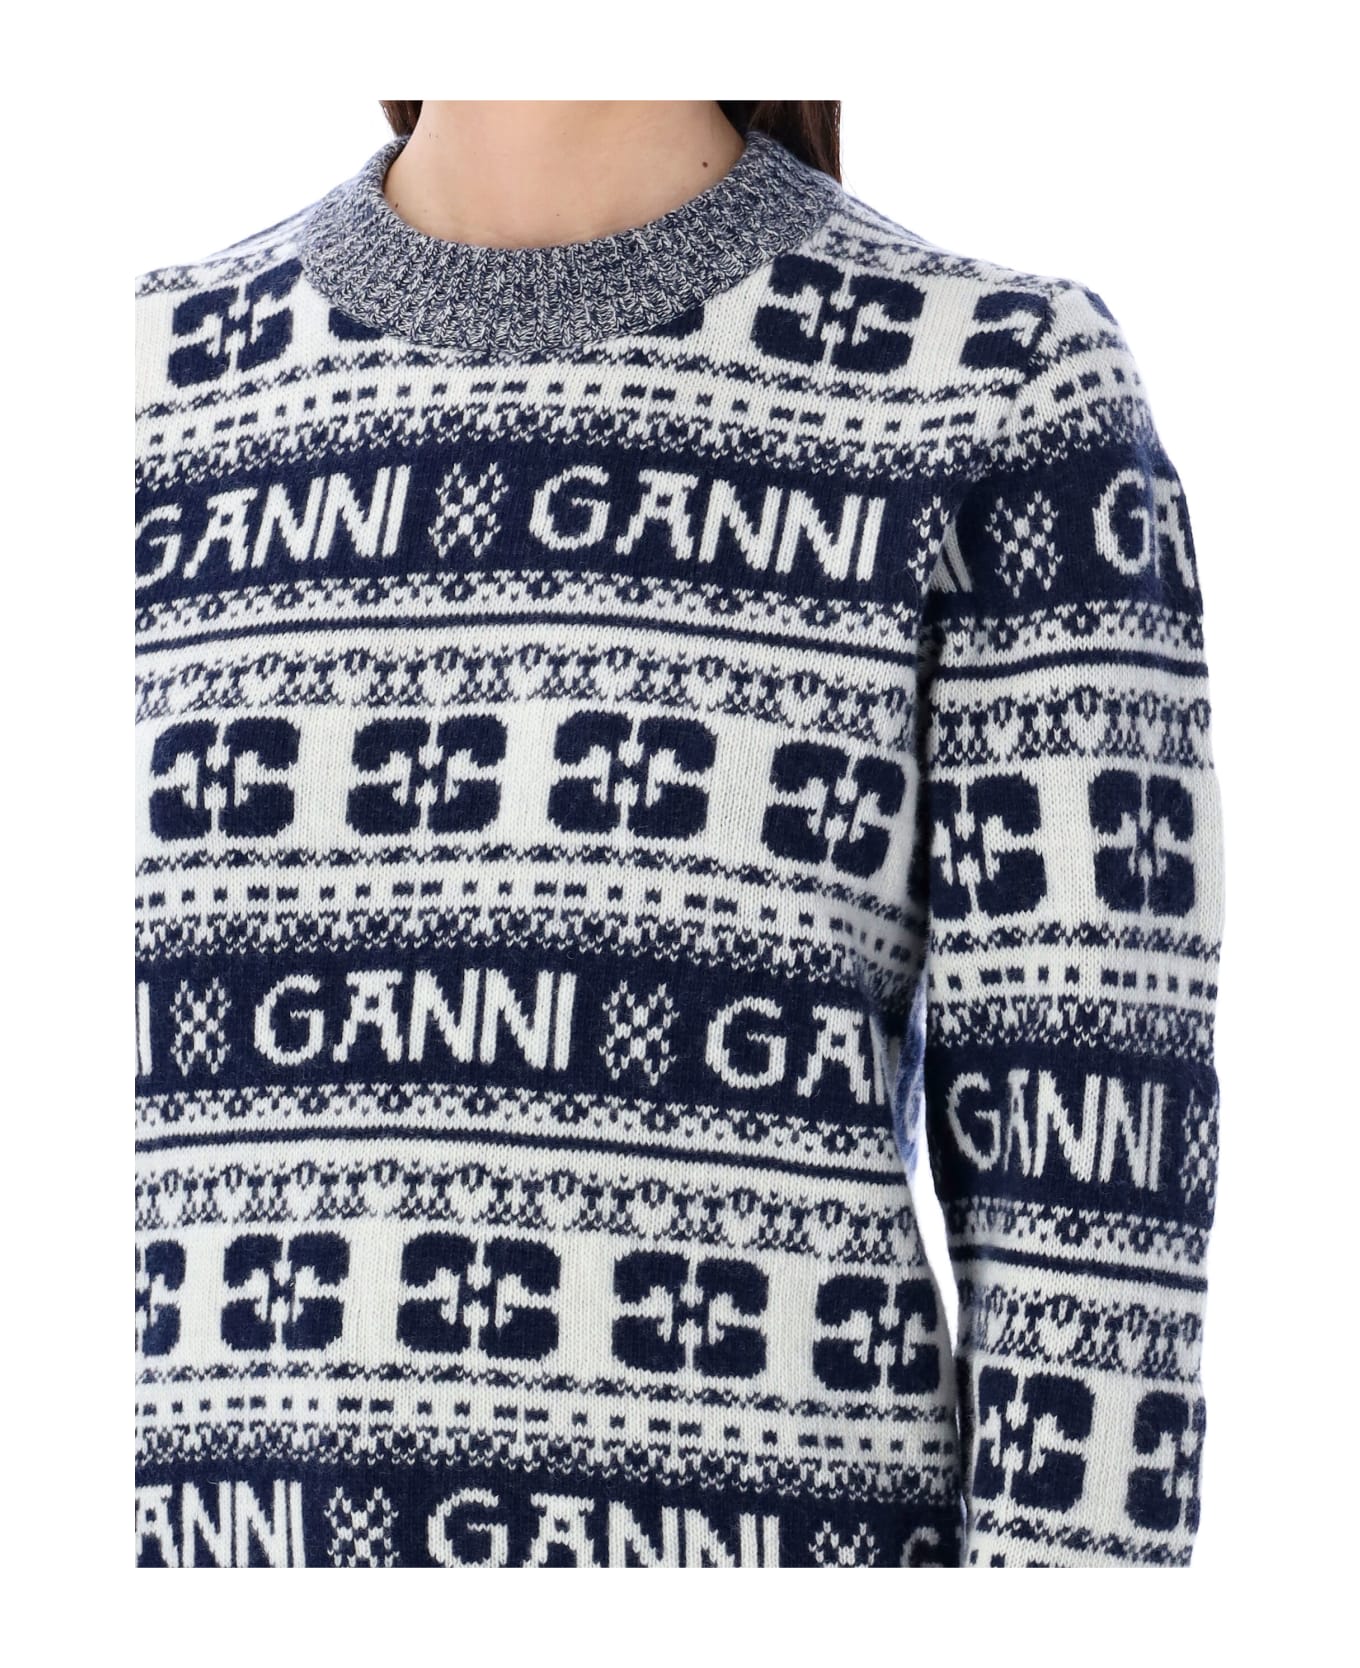 Ganni Allover Logo Sweater - SKY CAAPITAN GREY